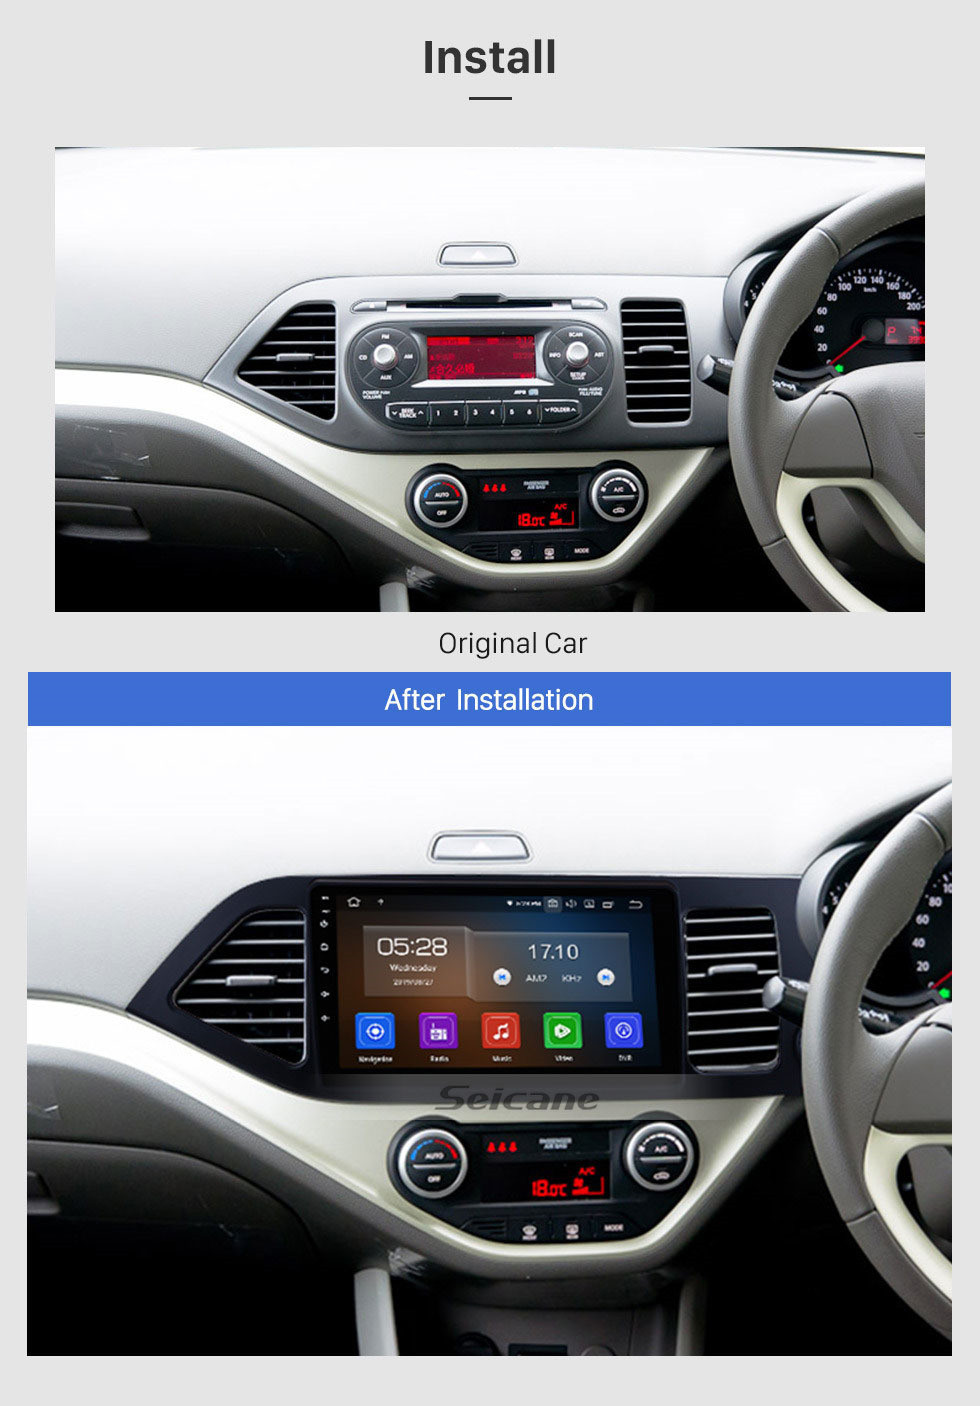 Seicane 9 polegadas Android 11.0 sistema de navegação GPS Rádio para 2011-2014 Kia Morning RHD Mirror link HD 1024 * 600 touch screen OBD2 DVR Retrovisor câmera TV 1080P Vídeo 3G WIFI Controle de volante Bluetooth USB